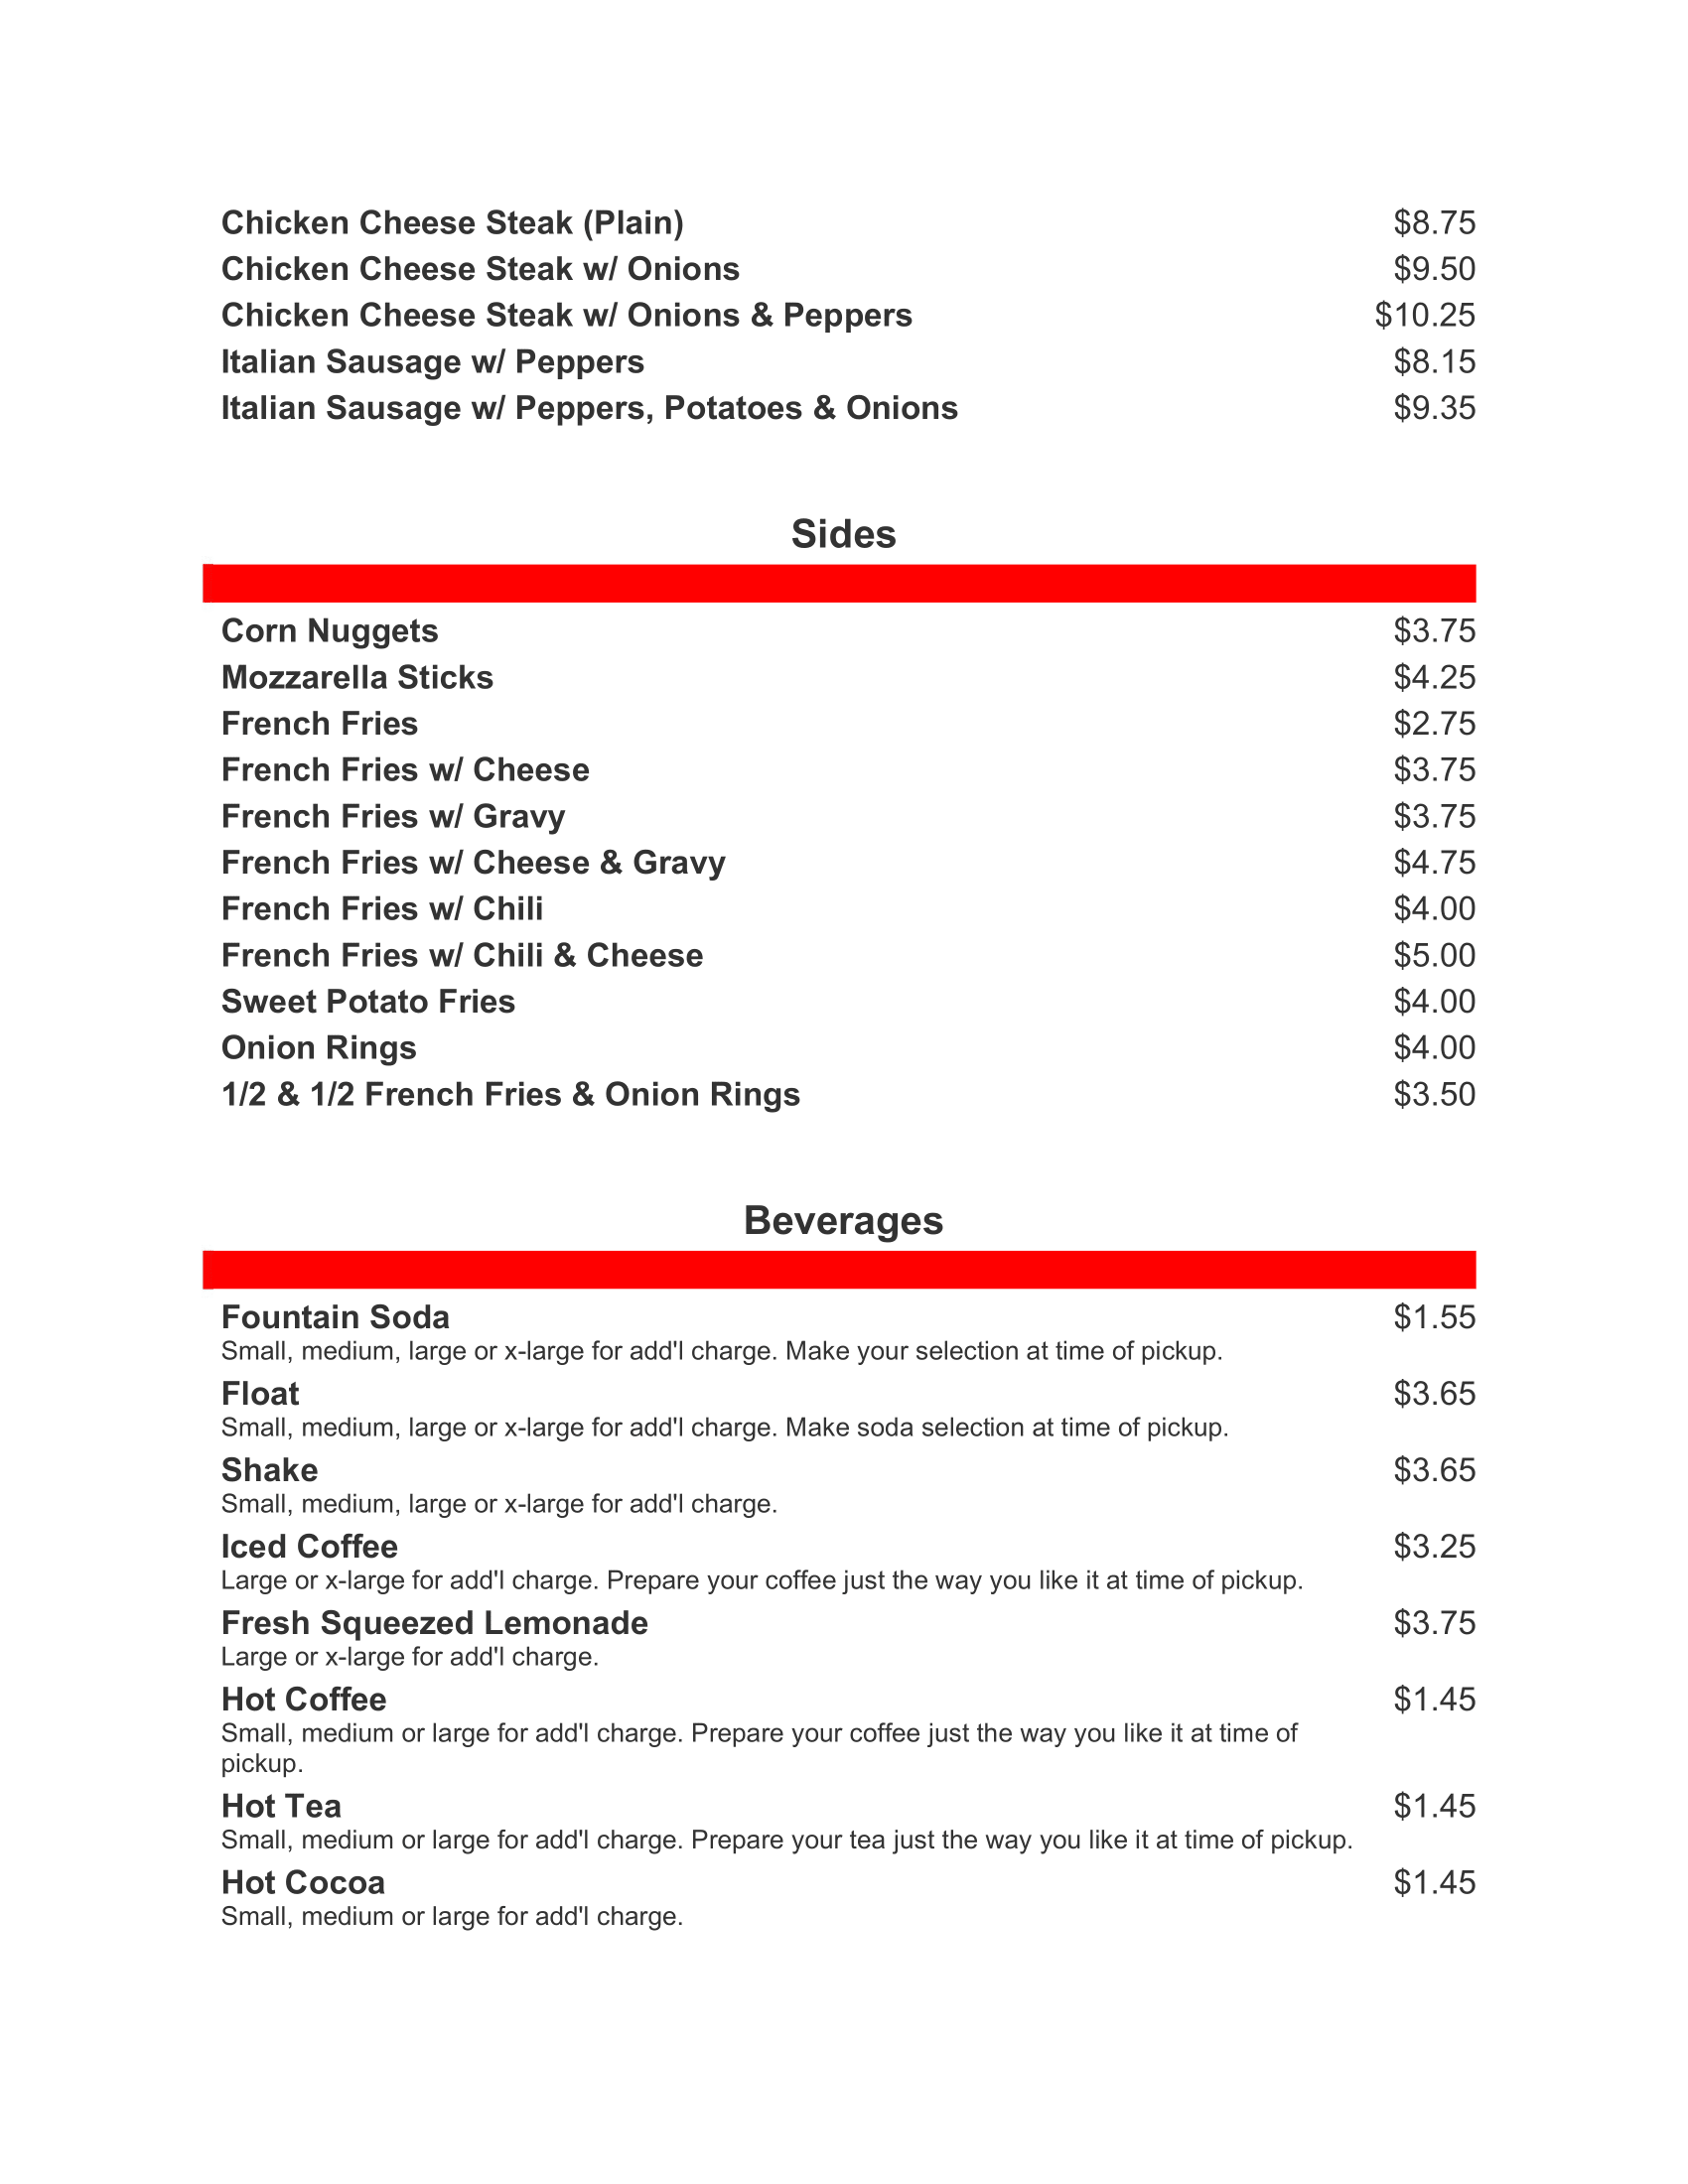 JM Grill takeout menu 12.9.21 4